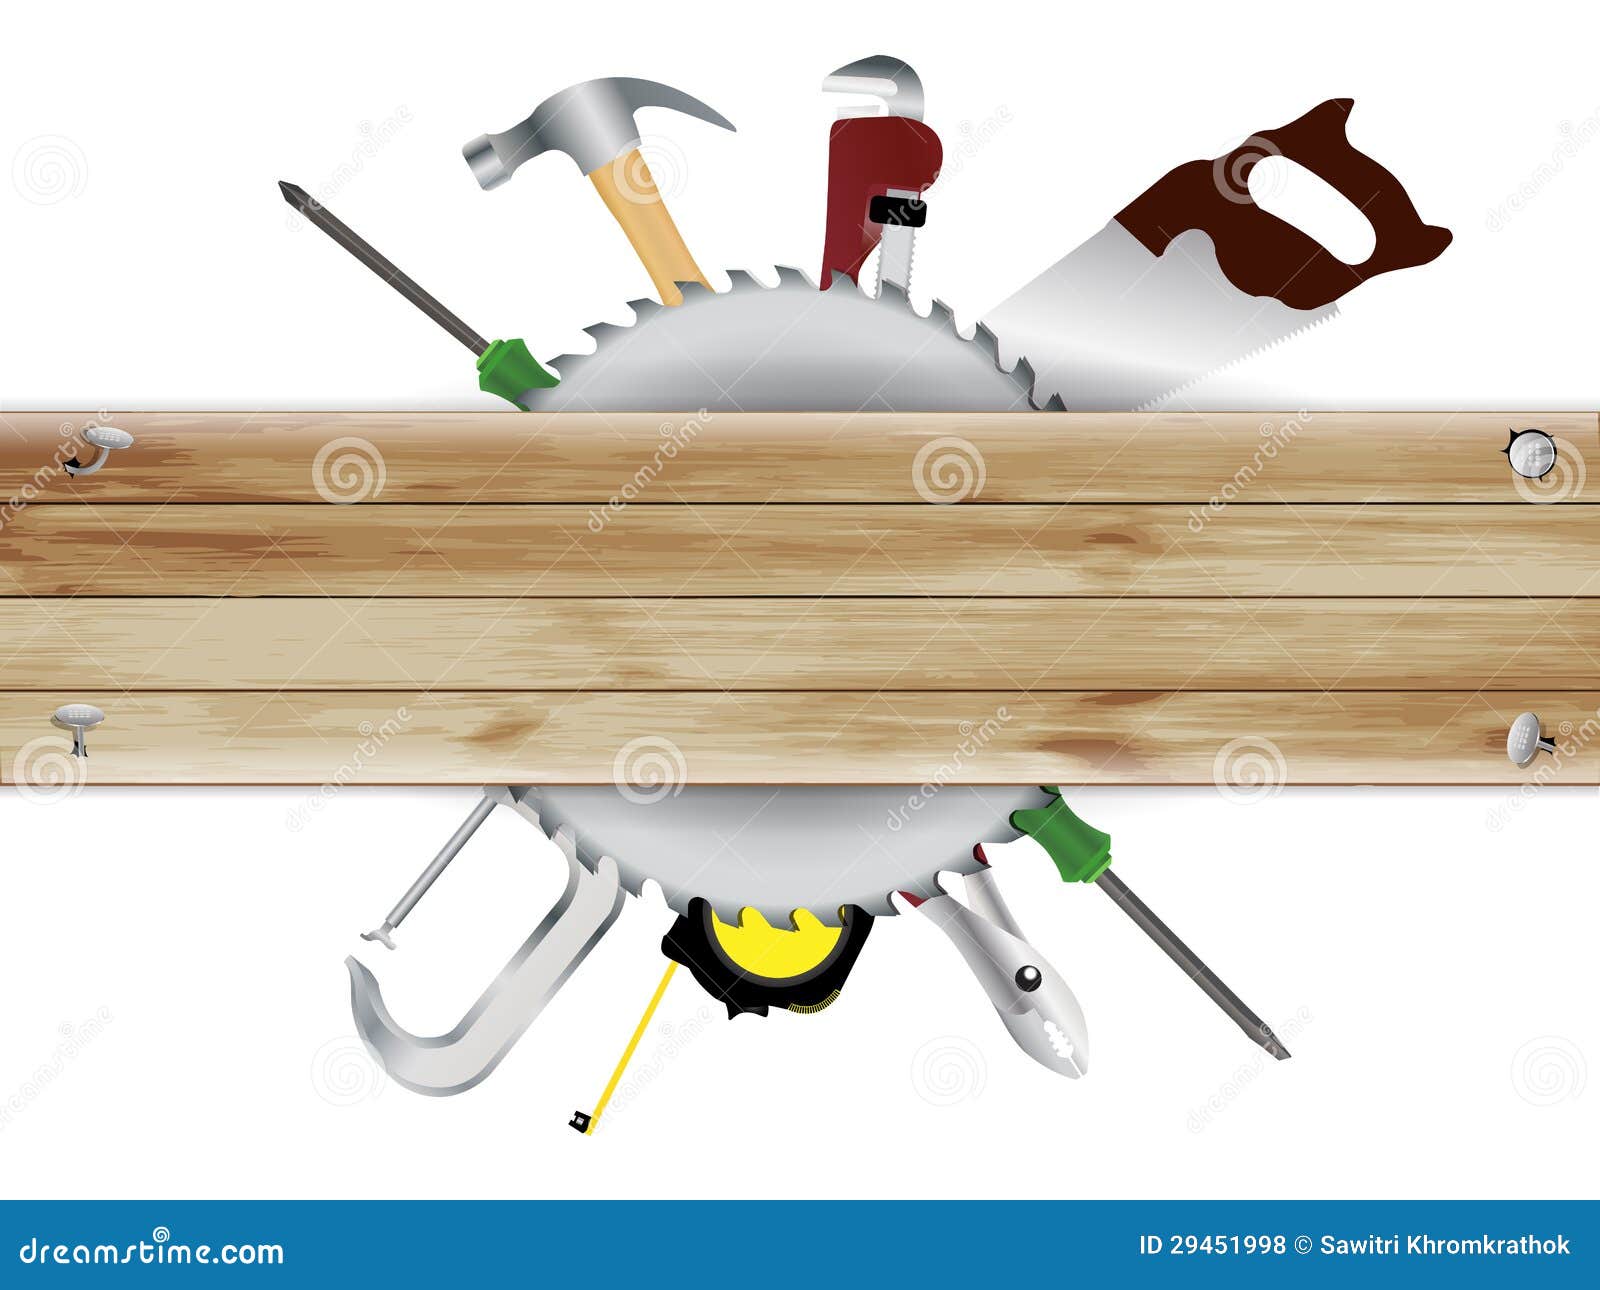 clipart carpenter tools - photo #3